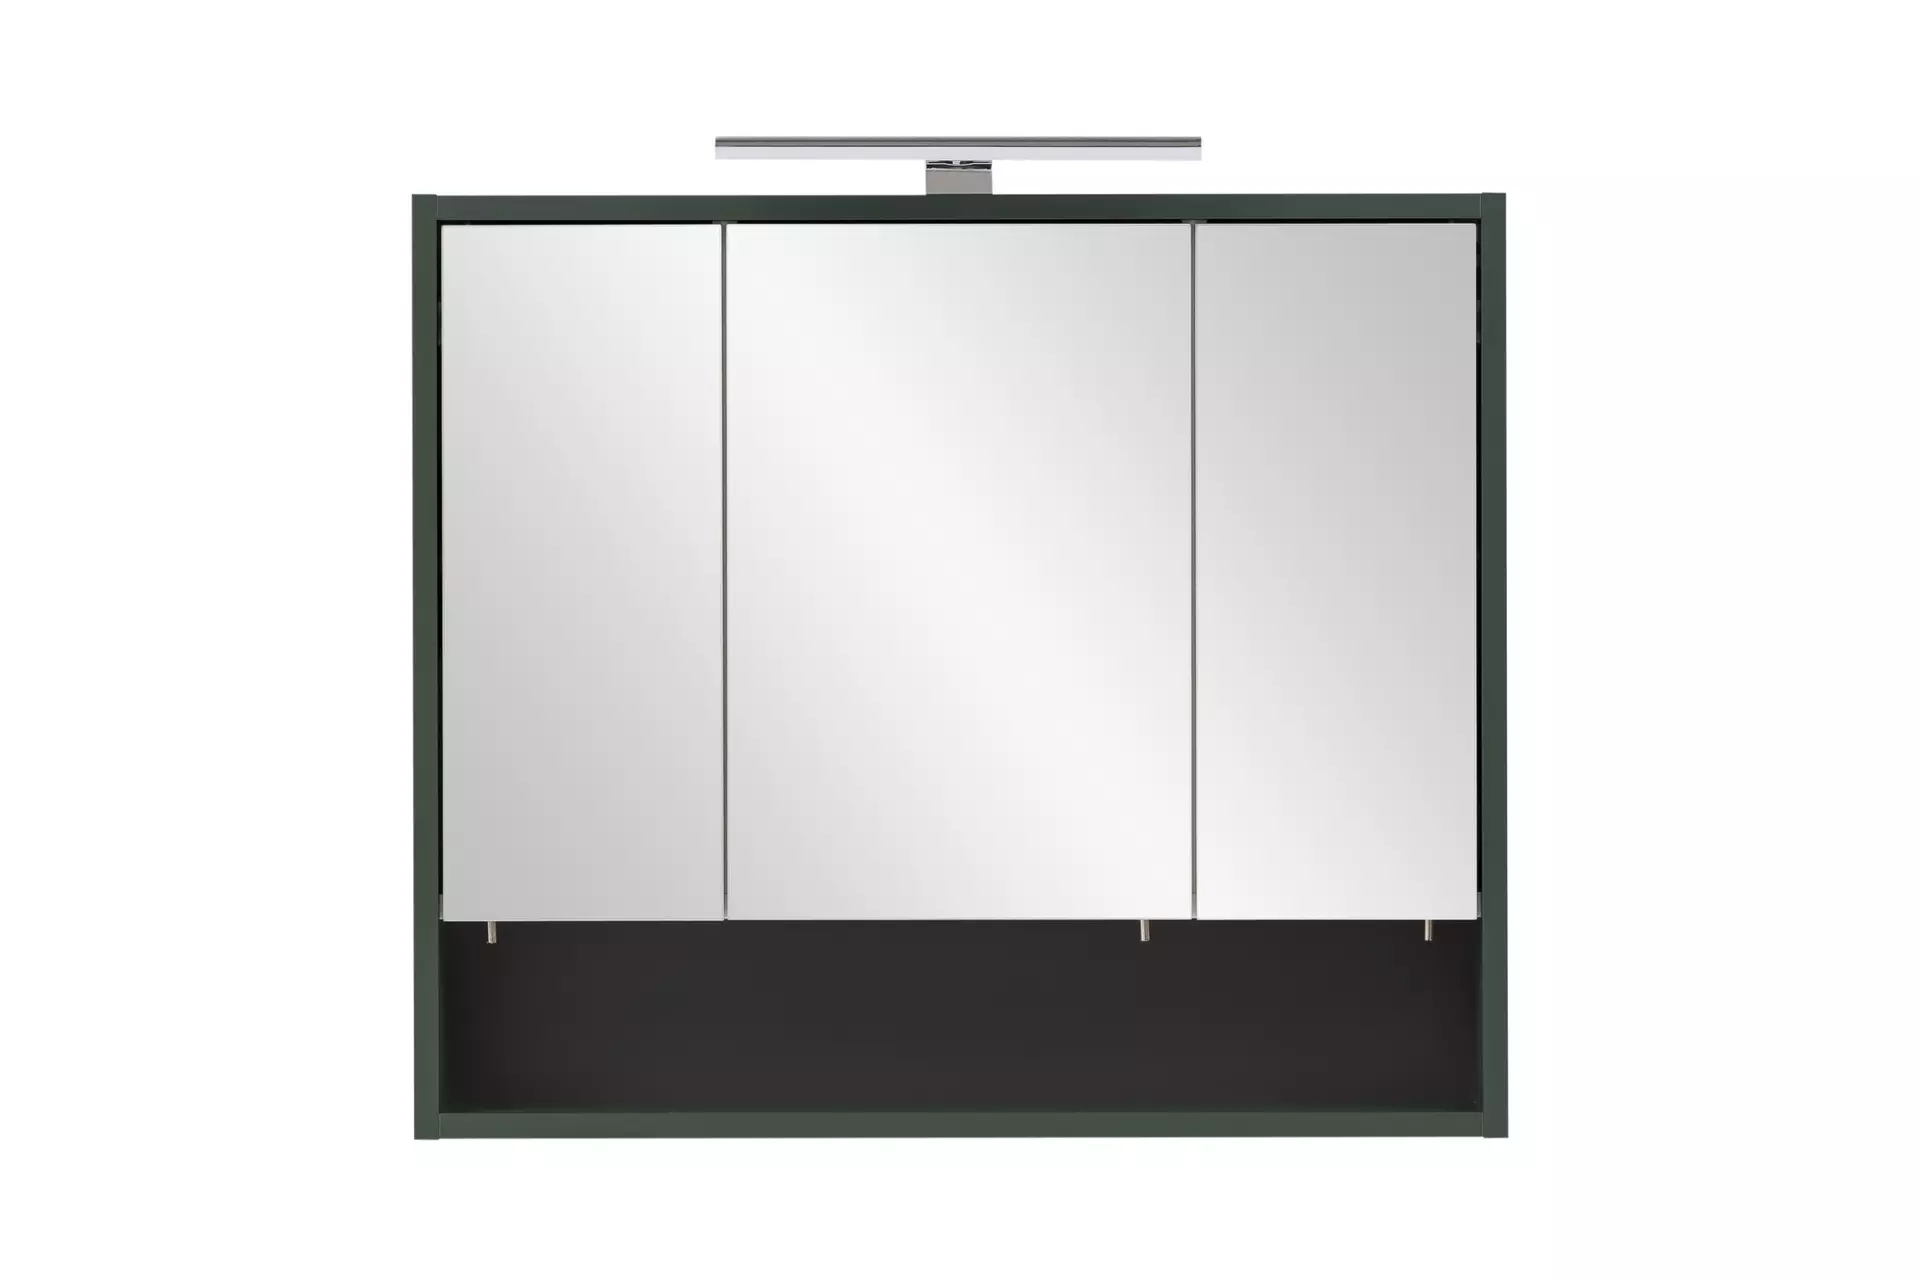 Spiegelschrank ca. 70 x 60 x 16 cm grün | Möbel Inhofer | Spiegelschränke